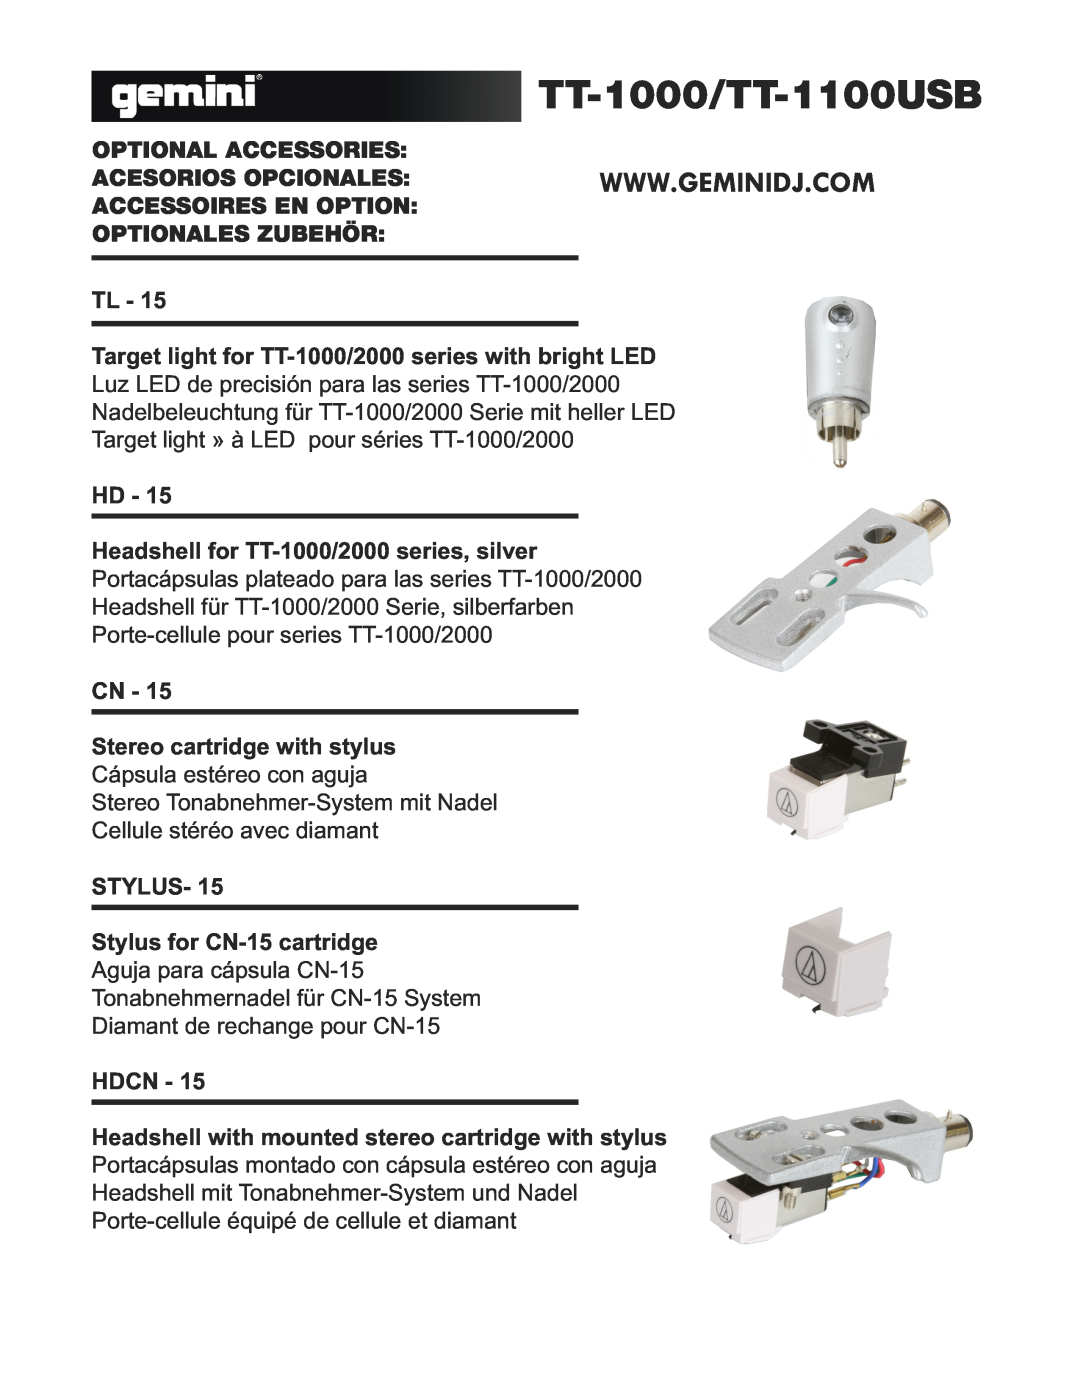 Gemini TT-1100 USB manual TT-1000/TT-1100USB, Optional Accessories 